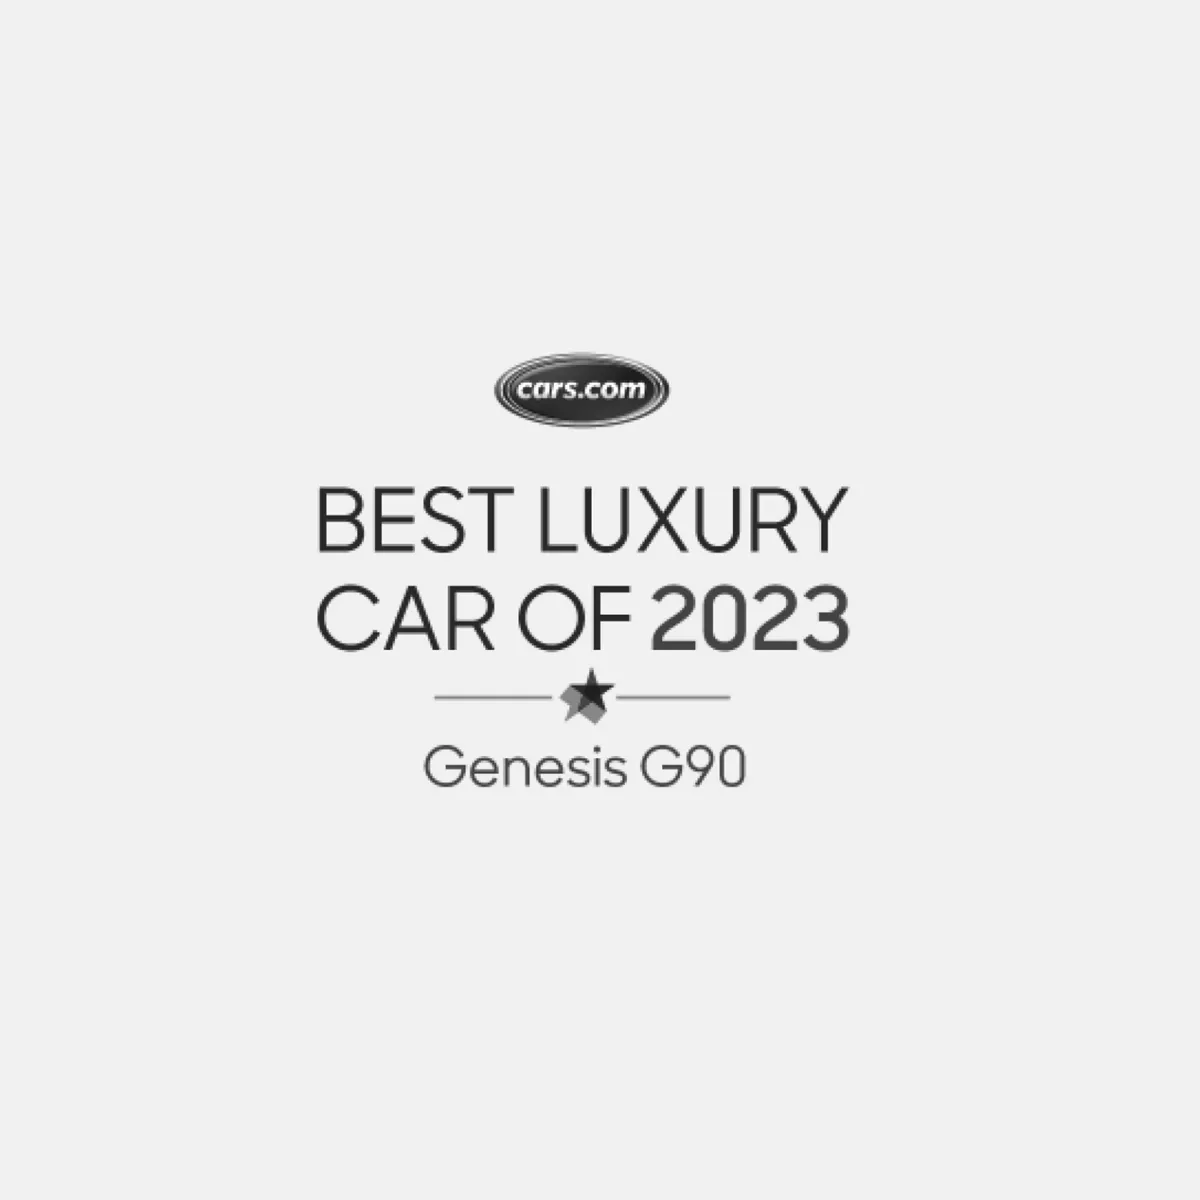 Cars.com best luxury car of 2023 Genesis G90.